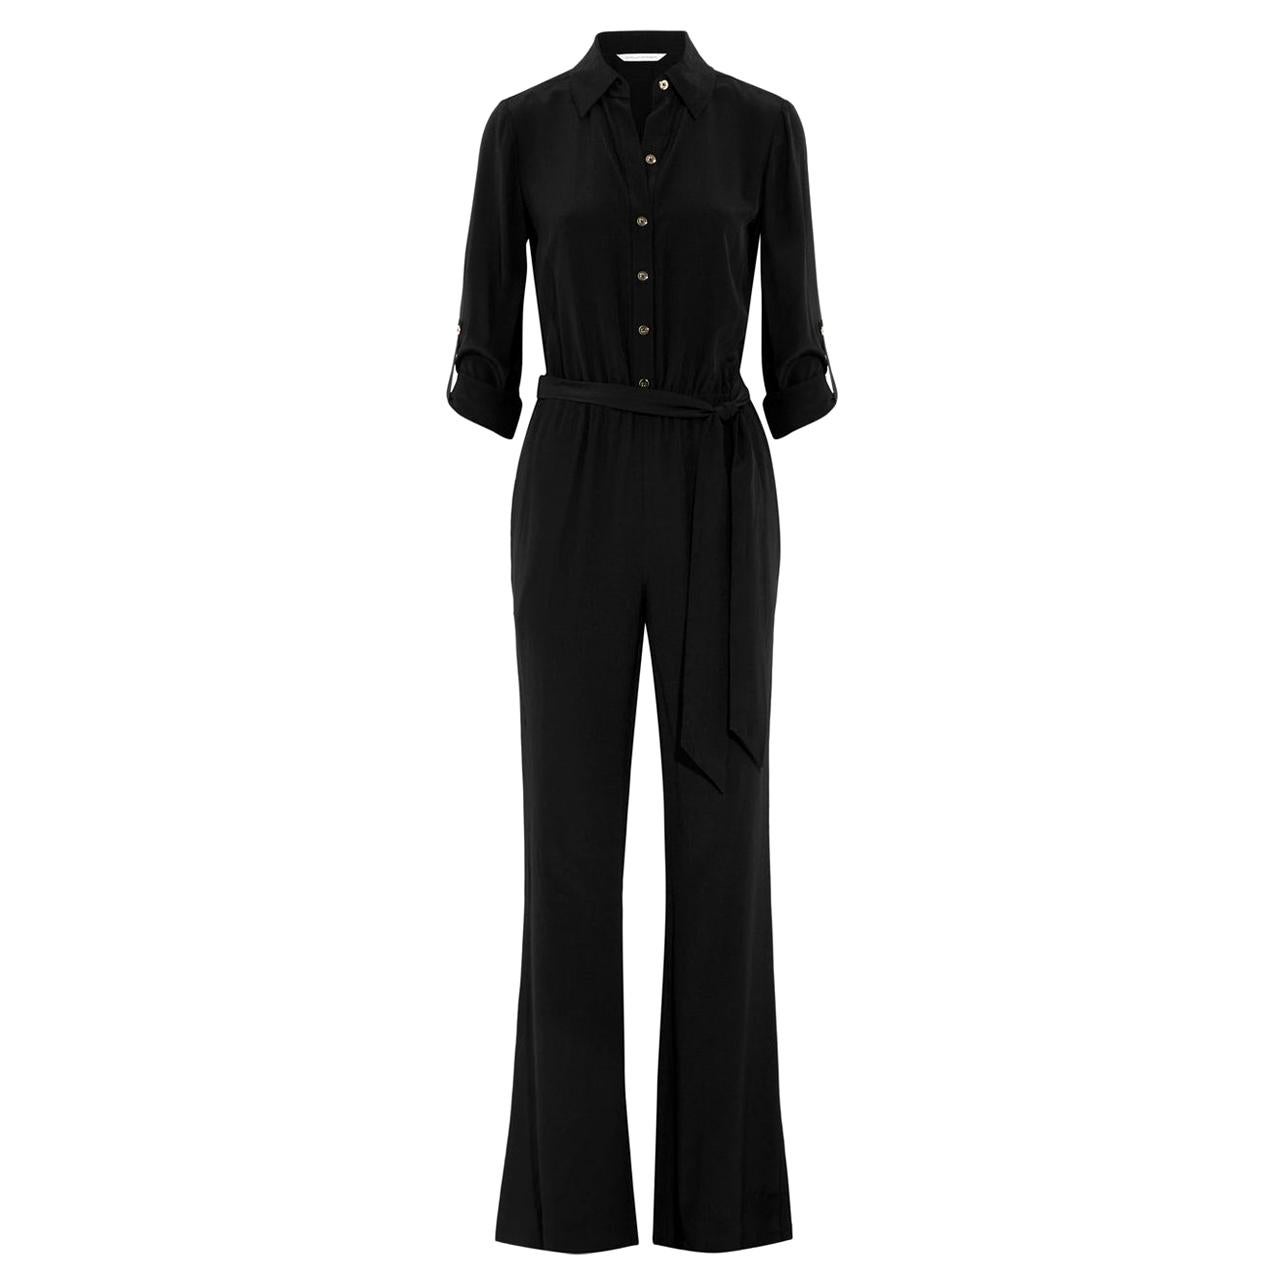 NEW DVF Diane von Furstenberg Black Silk Jumpsuit Overall Size US8